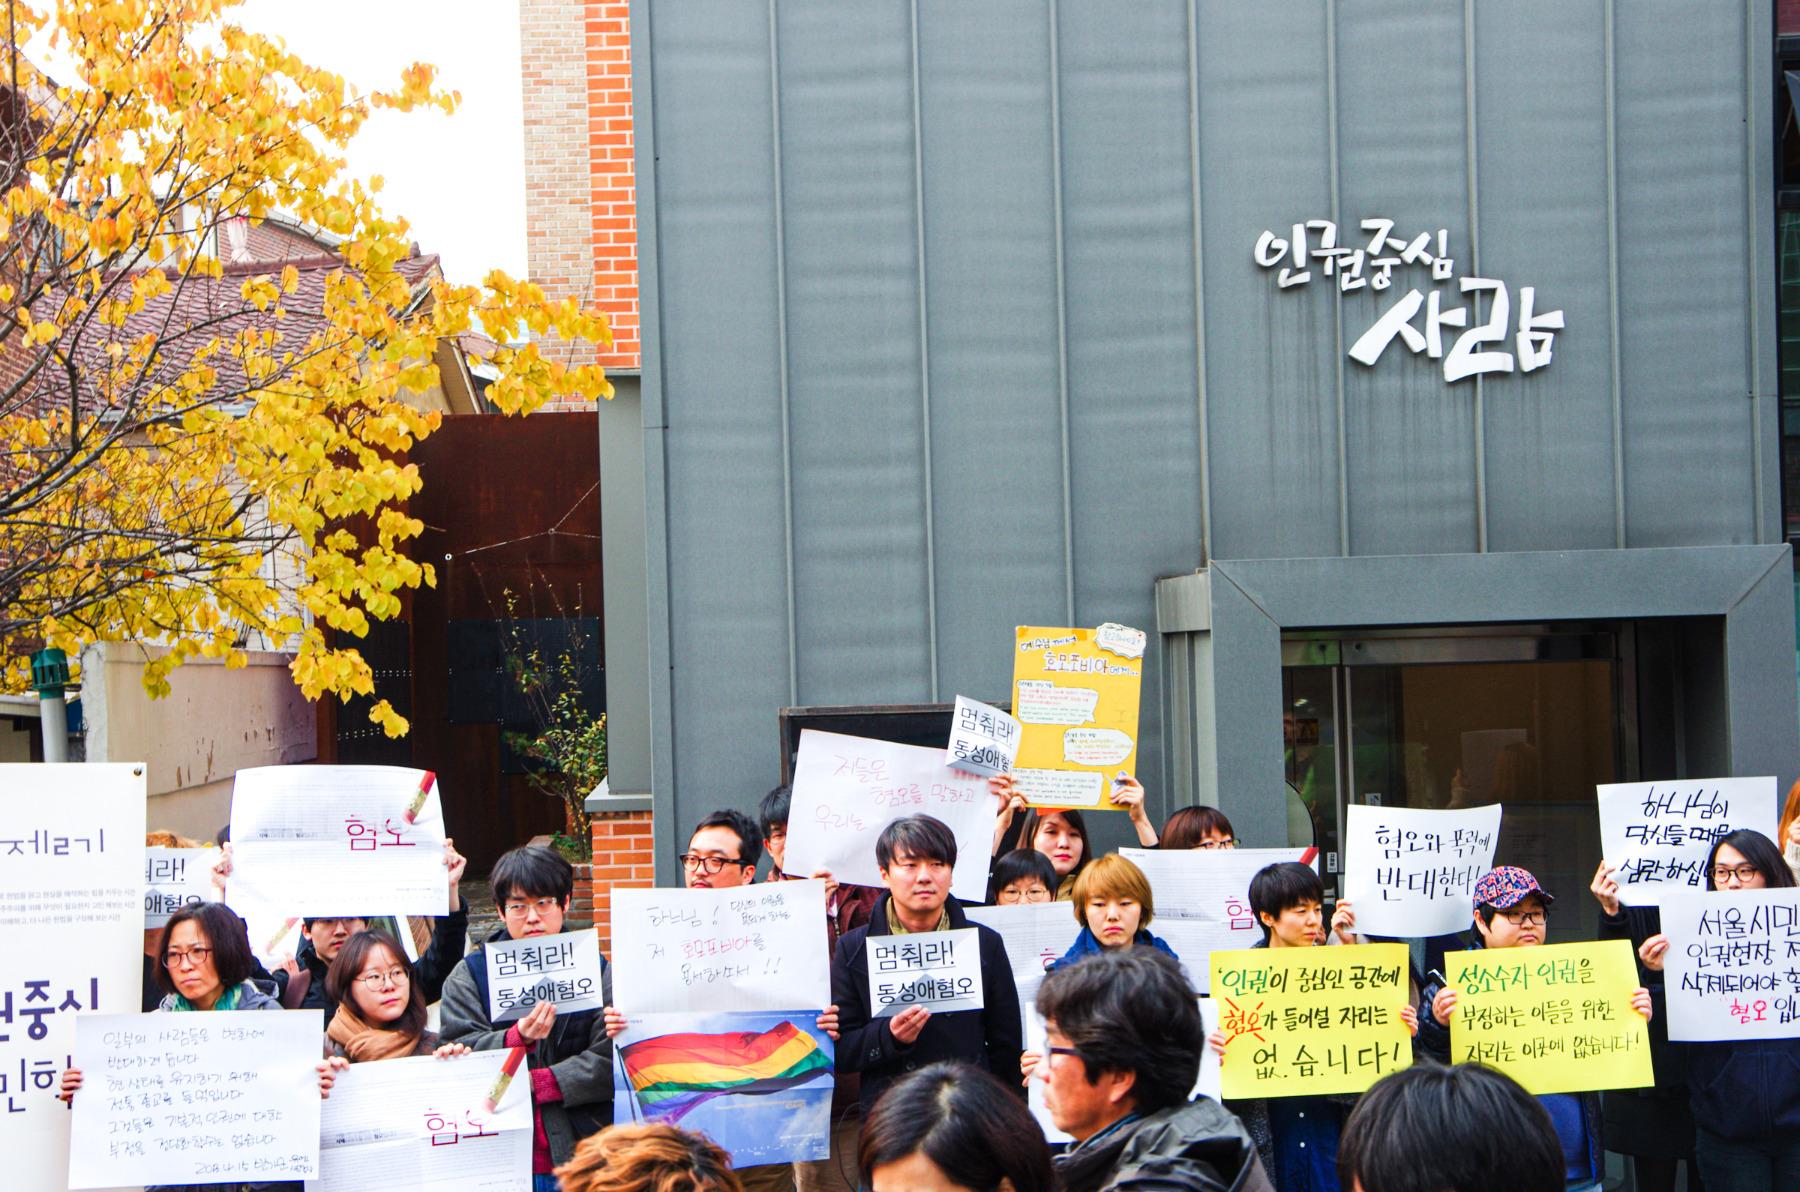 인권중심사람이라는 현판이 걸린 건물 앞에 십수명의 사람들이 피켓을 들고 서 있다.